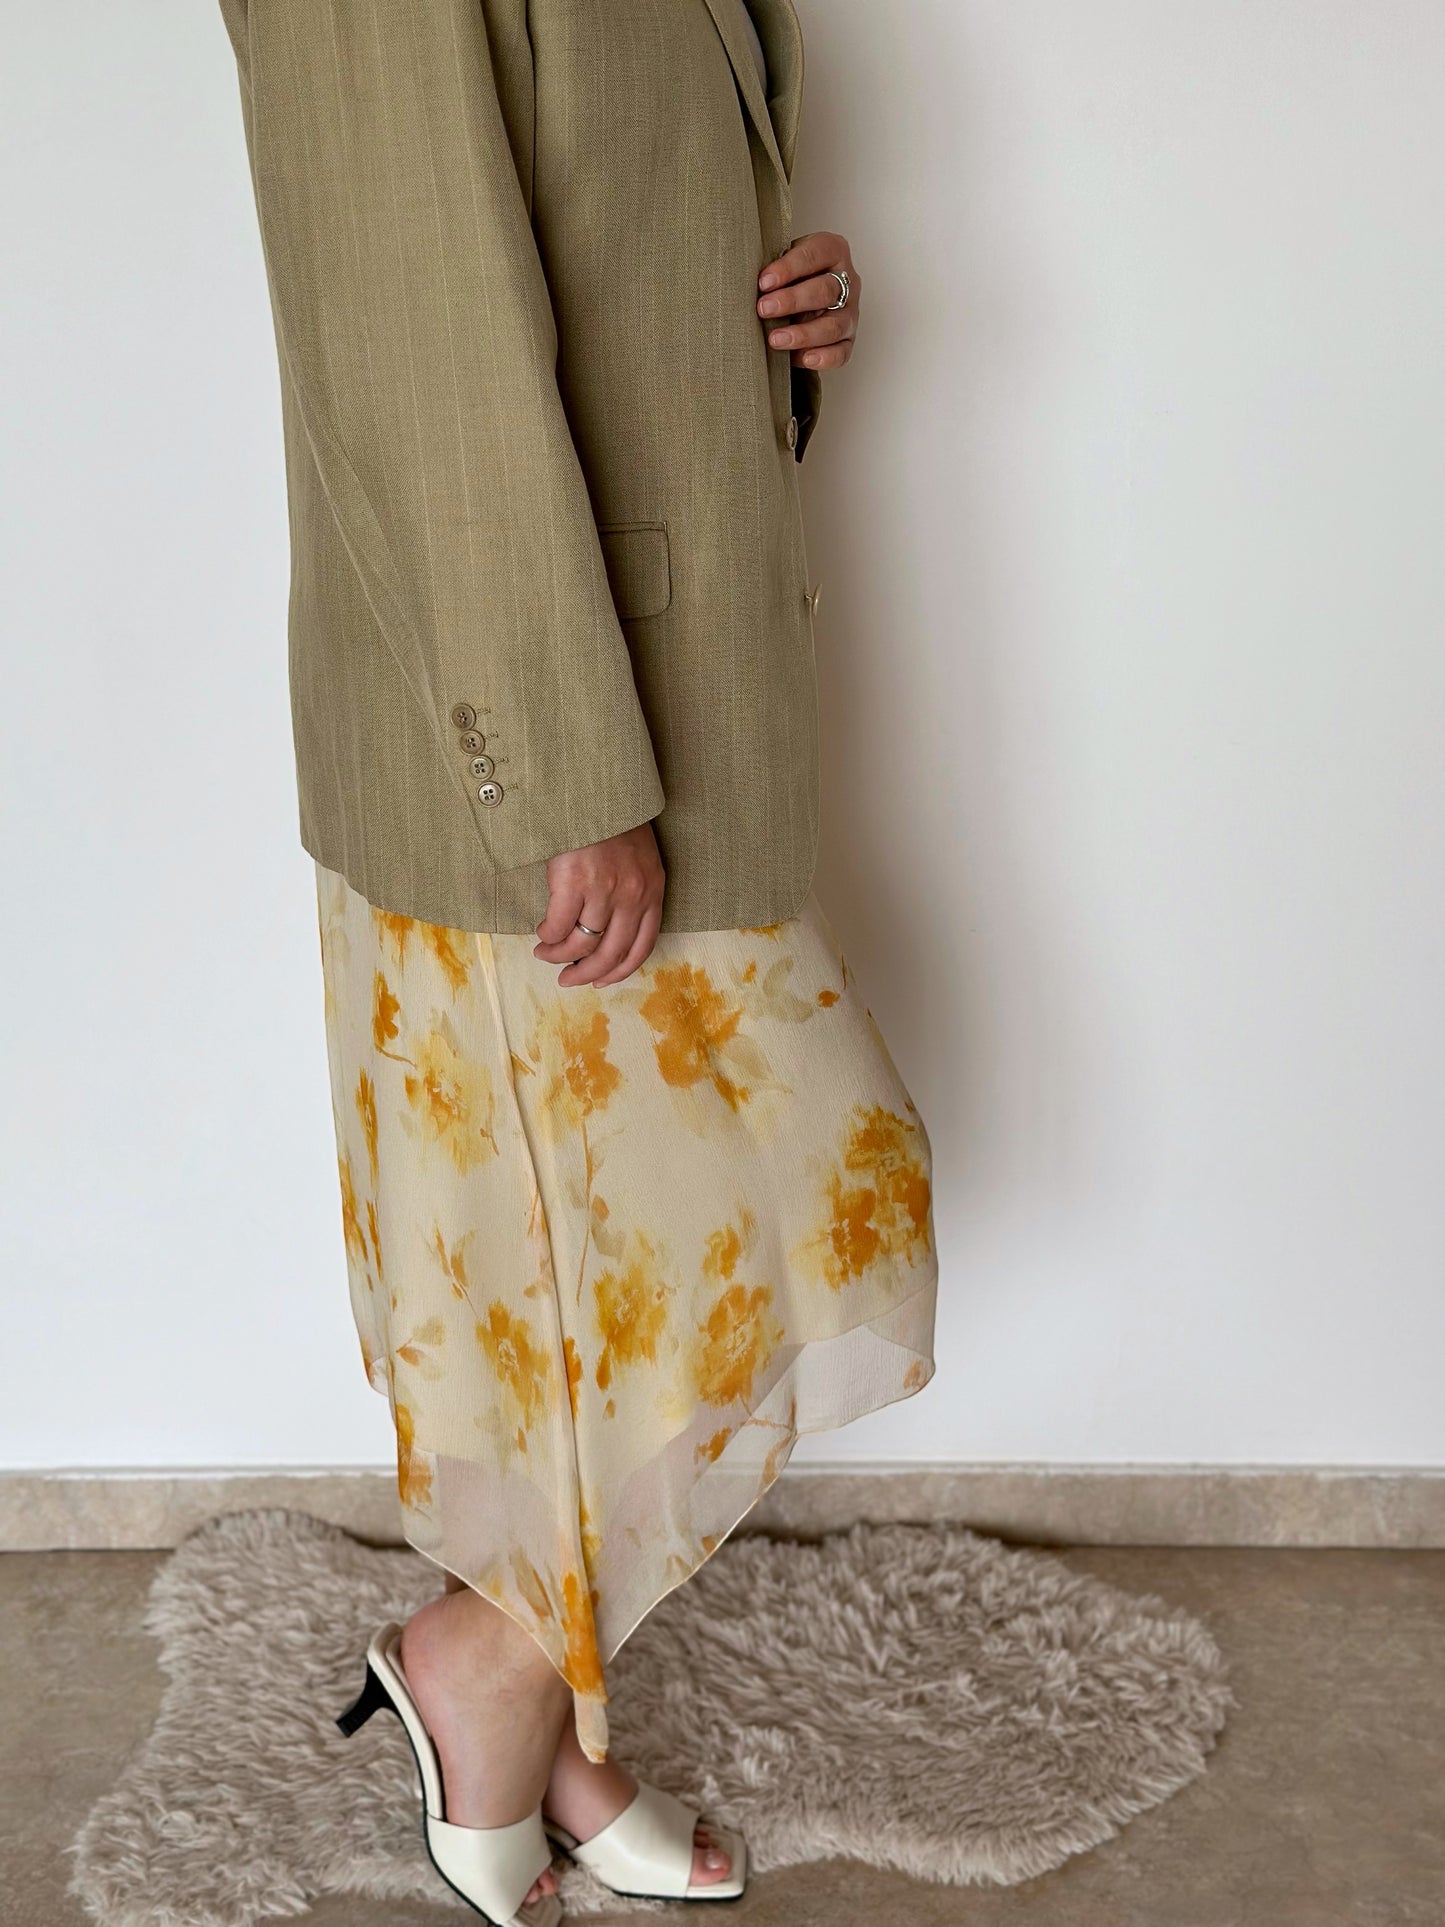 Stunning vintage asymmetrical 100% silk skirt